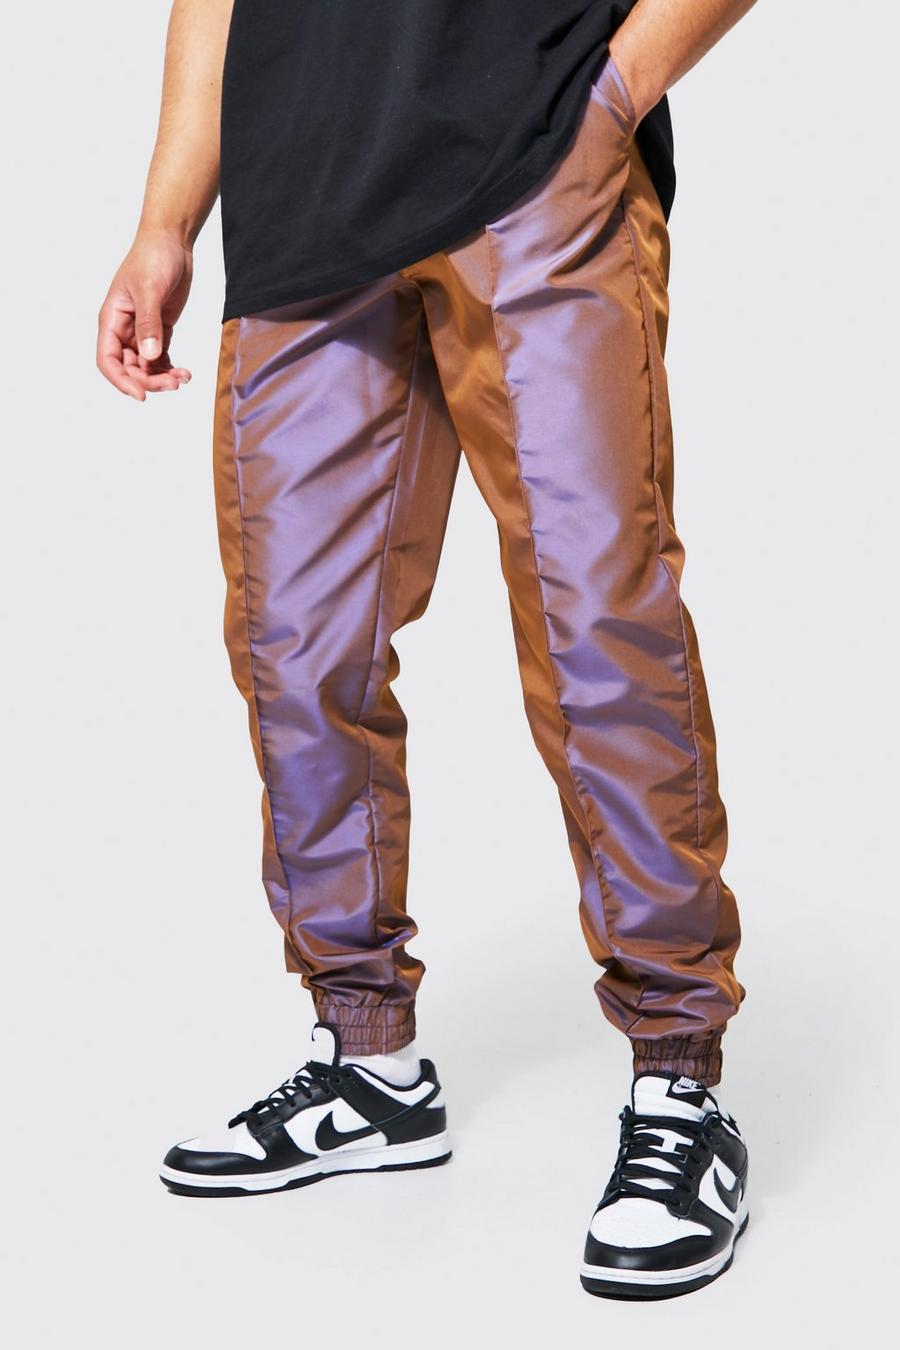 שוקולד marrón מכנסיים מחליפי צבעים בגזרה רגילה לגברים גבוהים image number 1